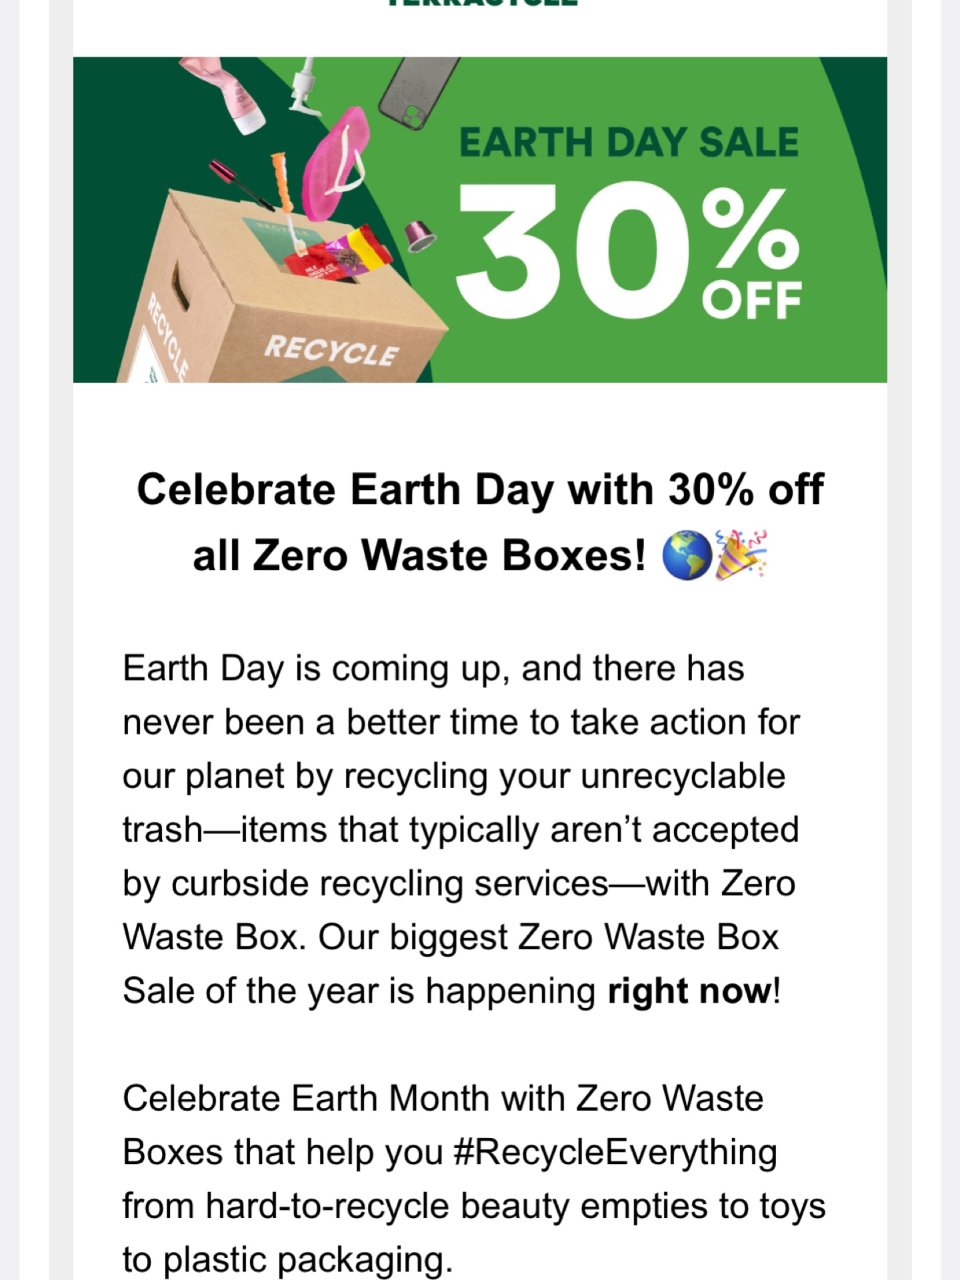 地球日 这个很有意义 环保回收...